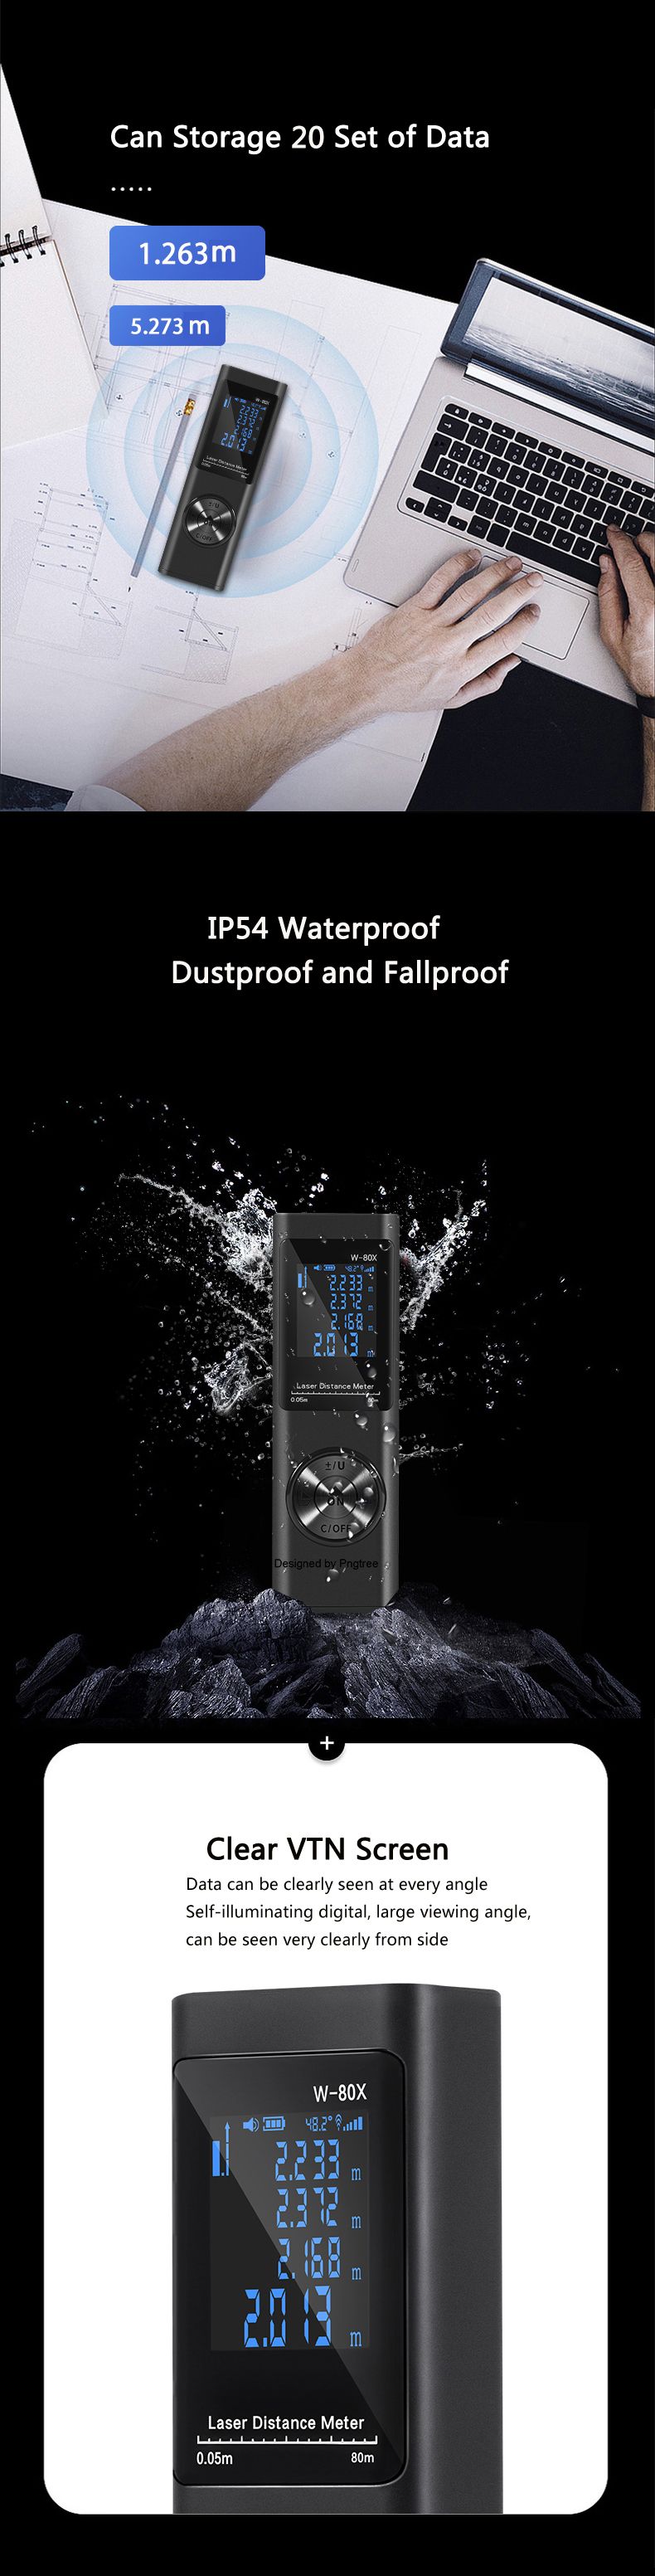 DANIU-LS-XS-Mini-Laser-Distance-Meter-Swith-Bult-in-Rechargeable-Battery-Waterproof-Dustproof-Fallpr-1589070